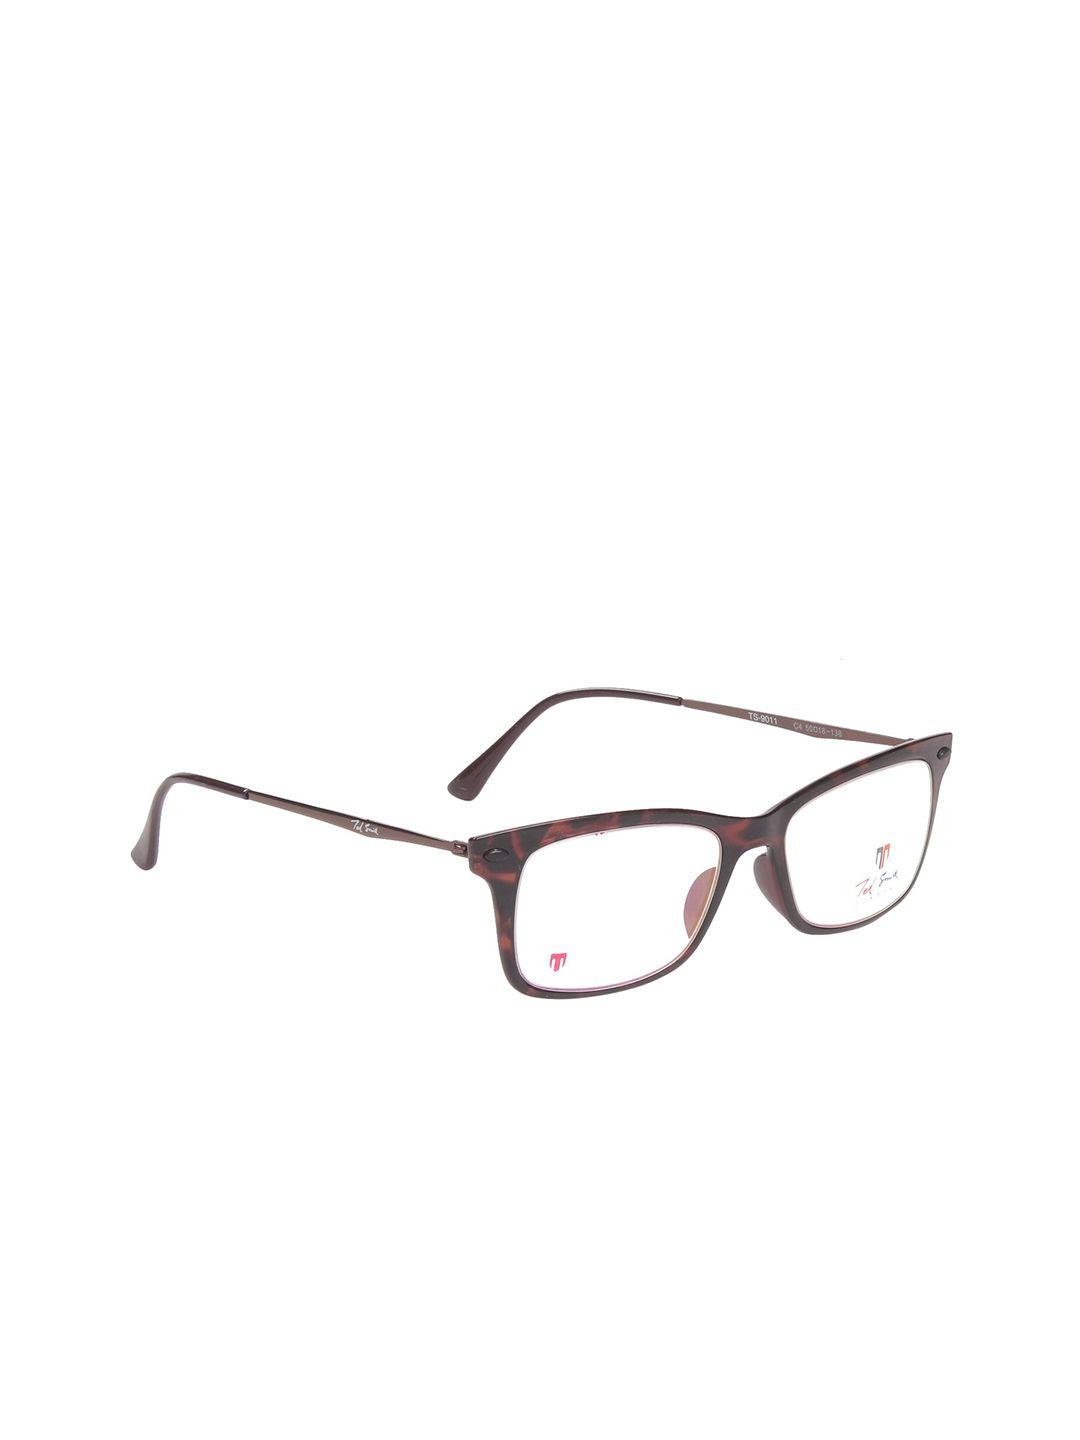 ted smith unisex brown full rim wayfarer frames eyeglasses